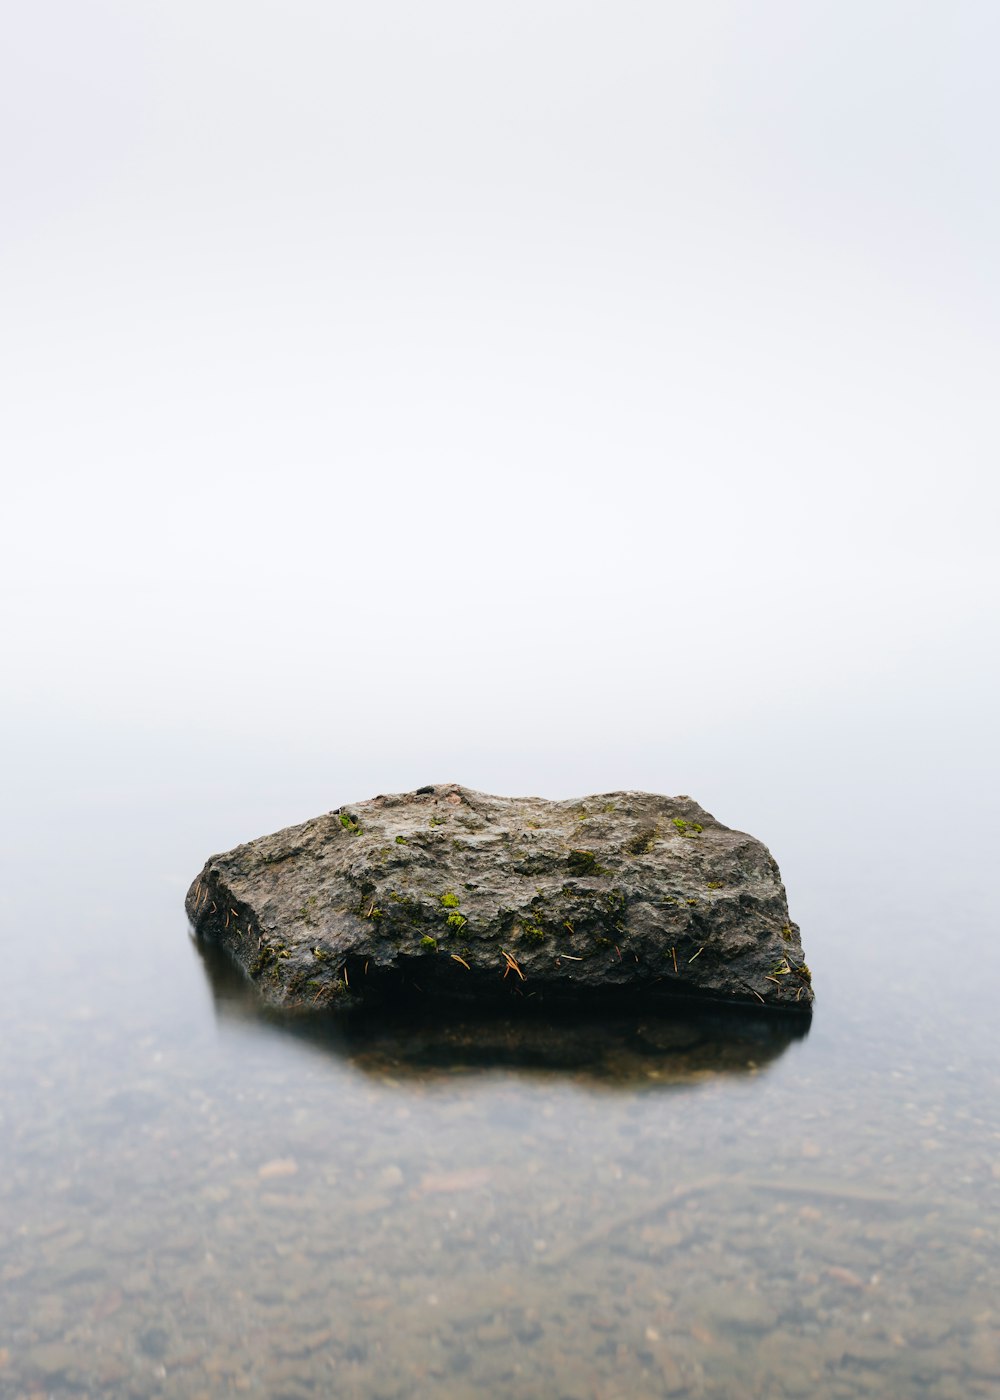 piedra marrón en cuerpo de agua tranquila